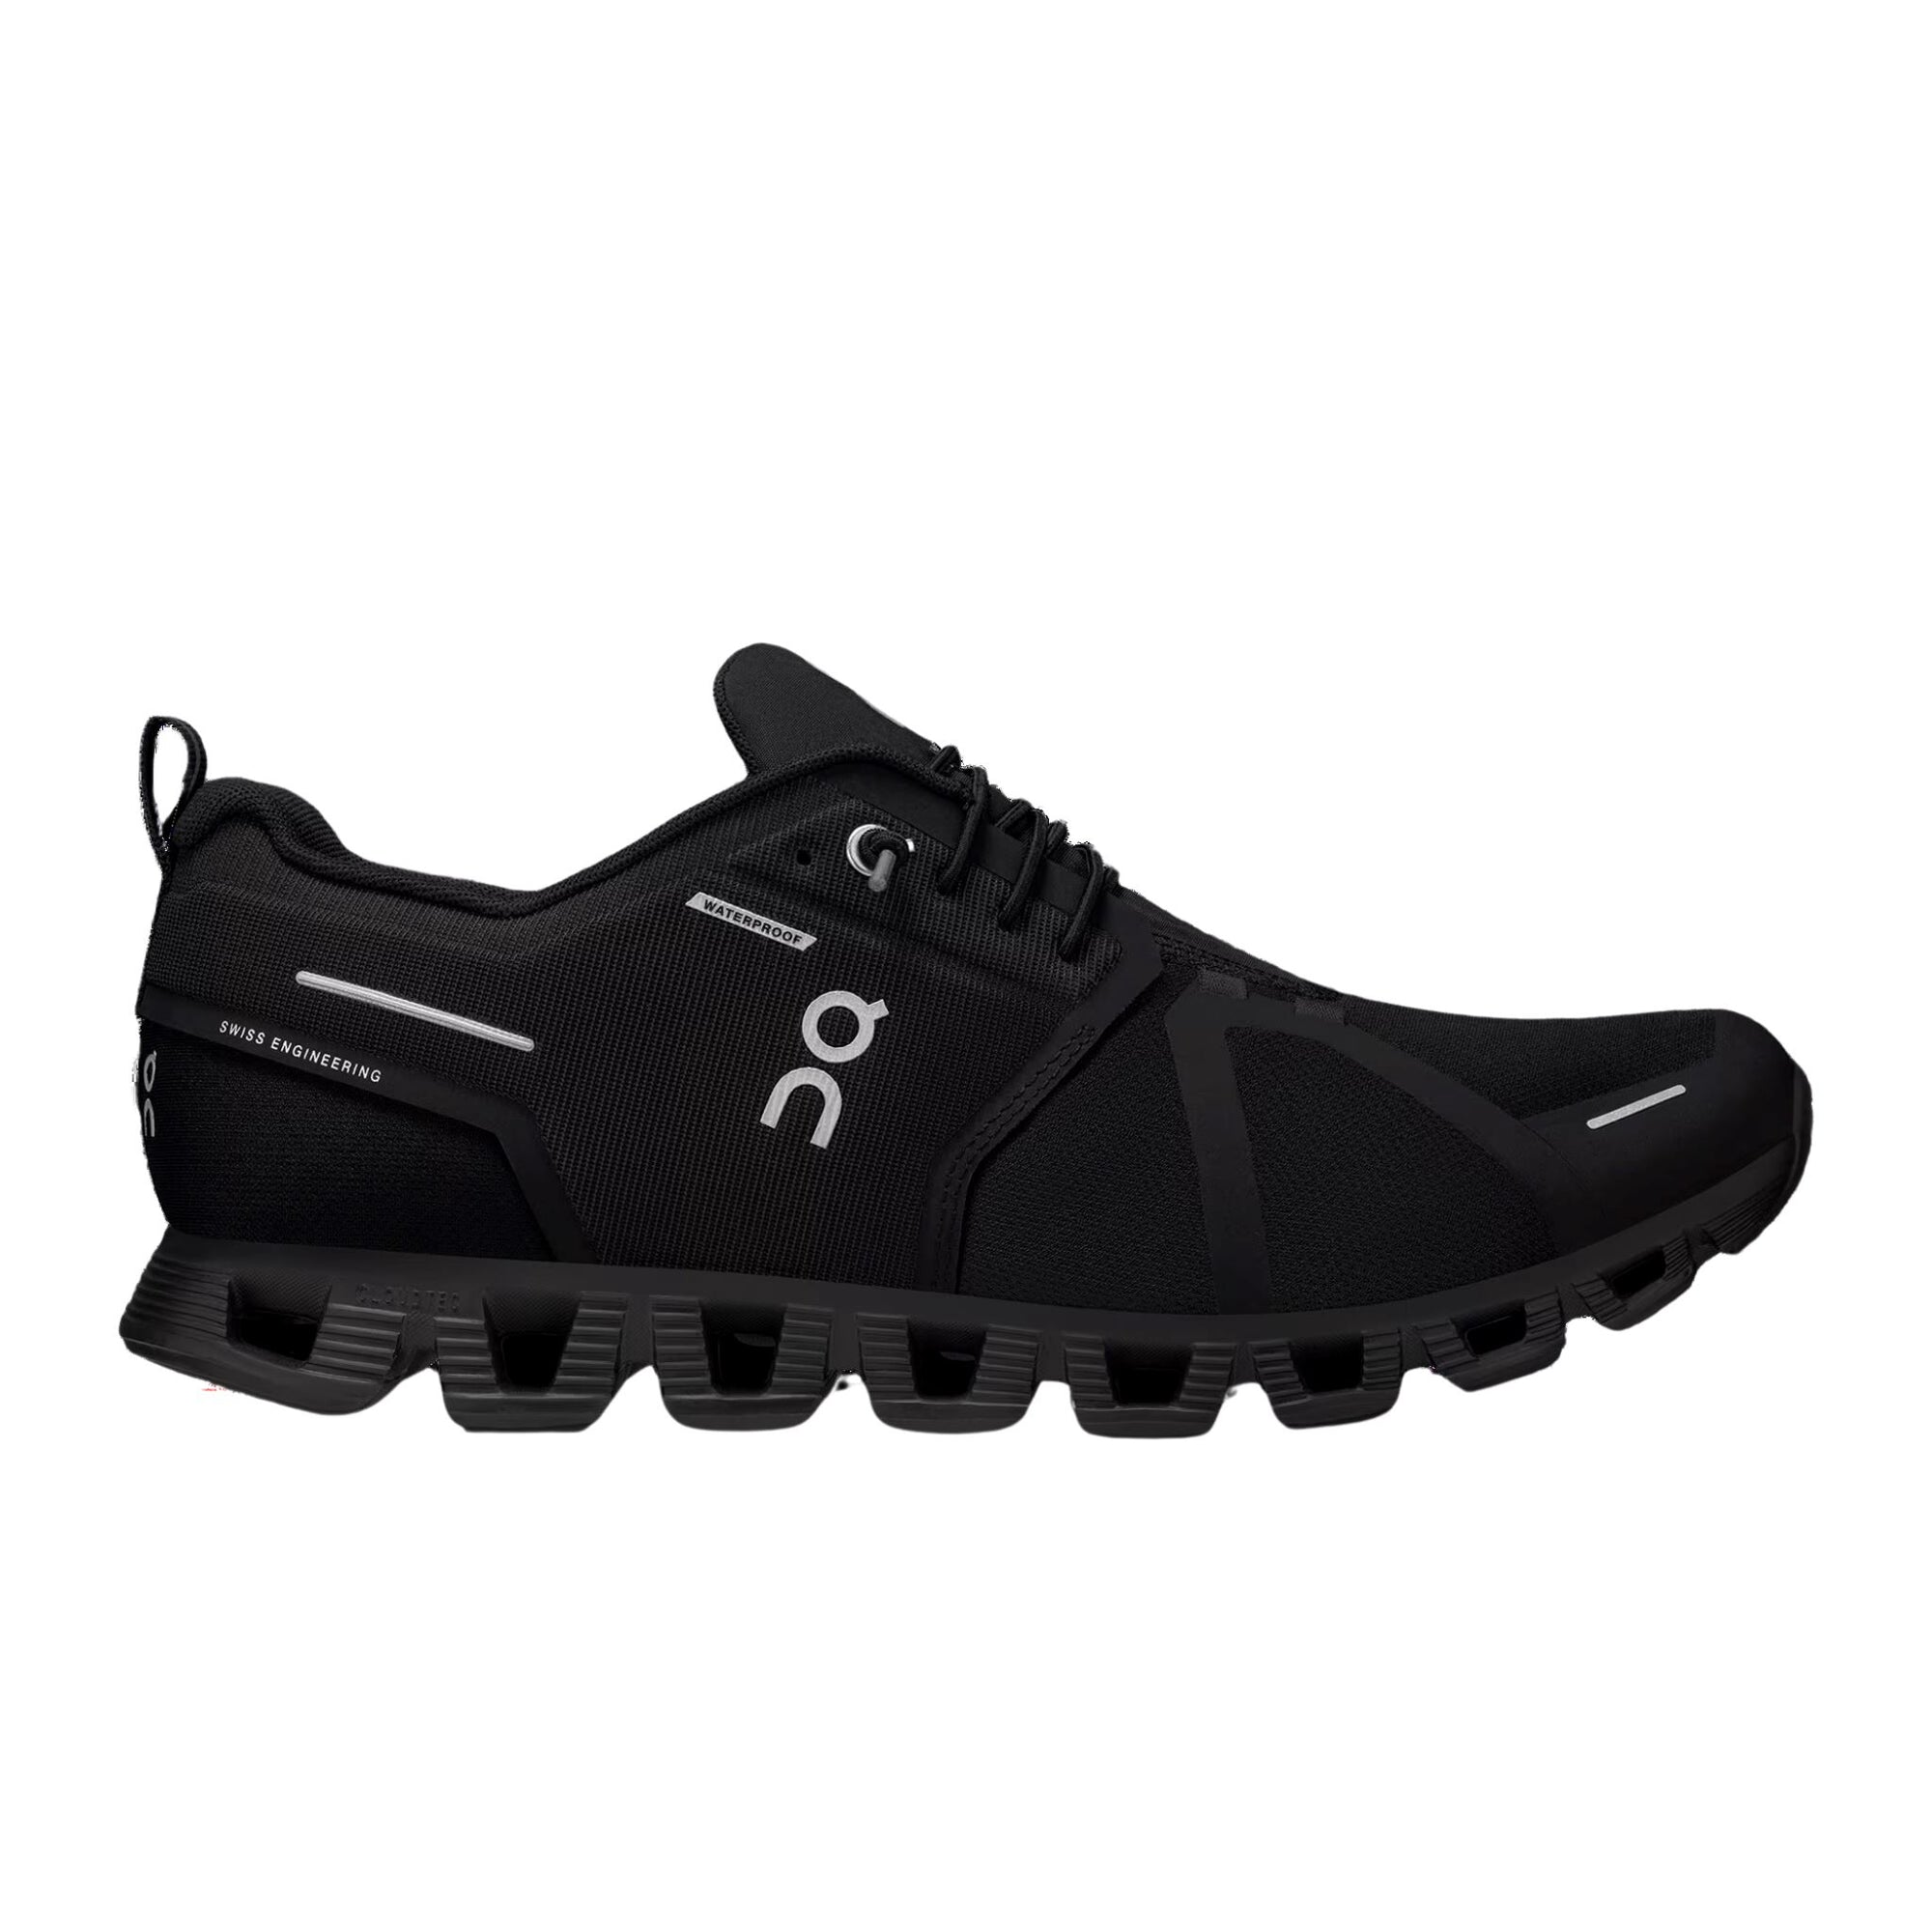 Mens On Cloud 5 Waterproof shoe - Black